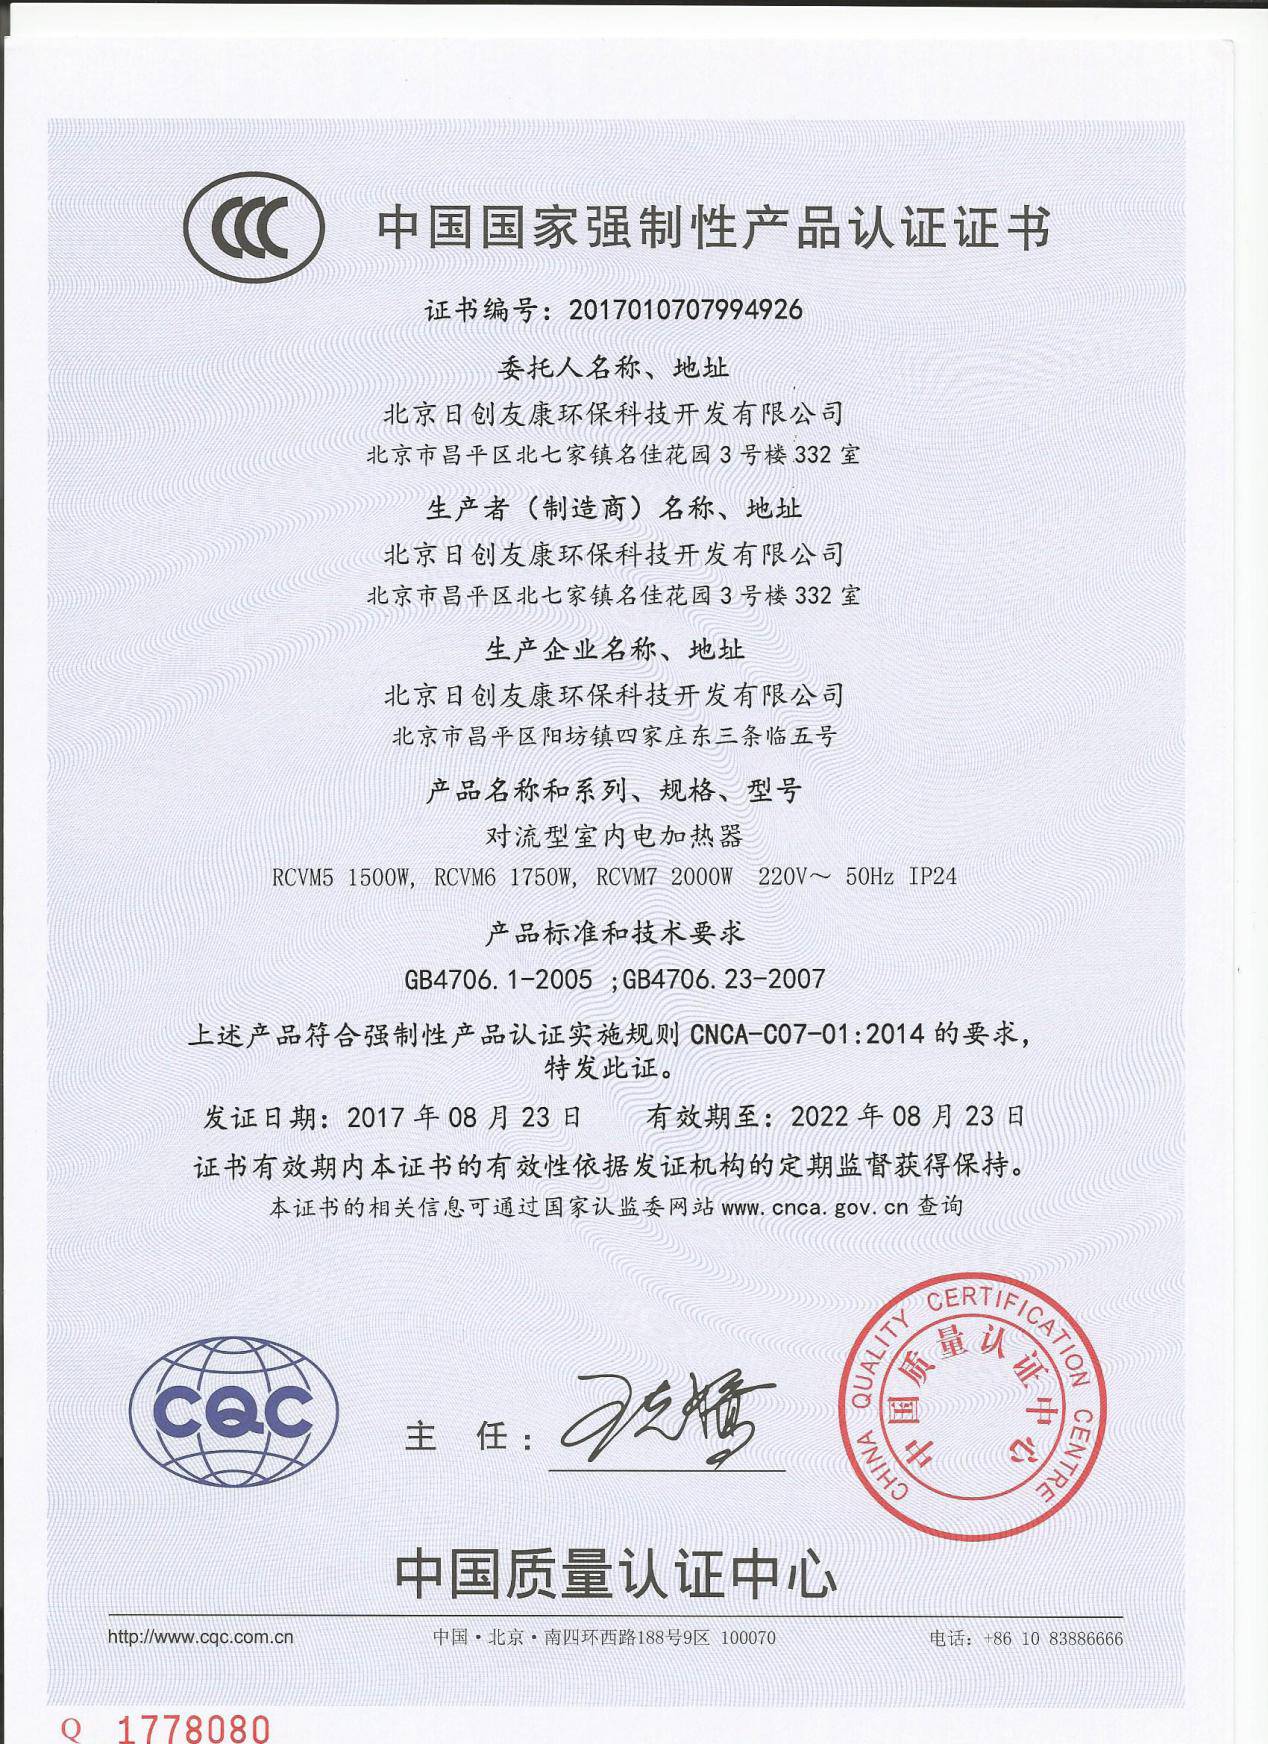 对流电暖器CCC证书-1